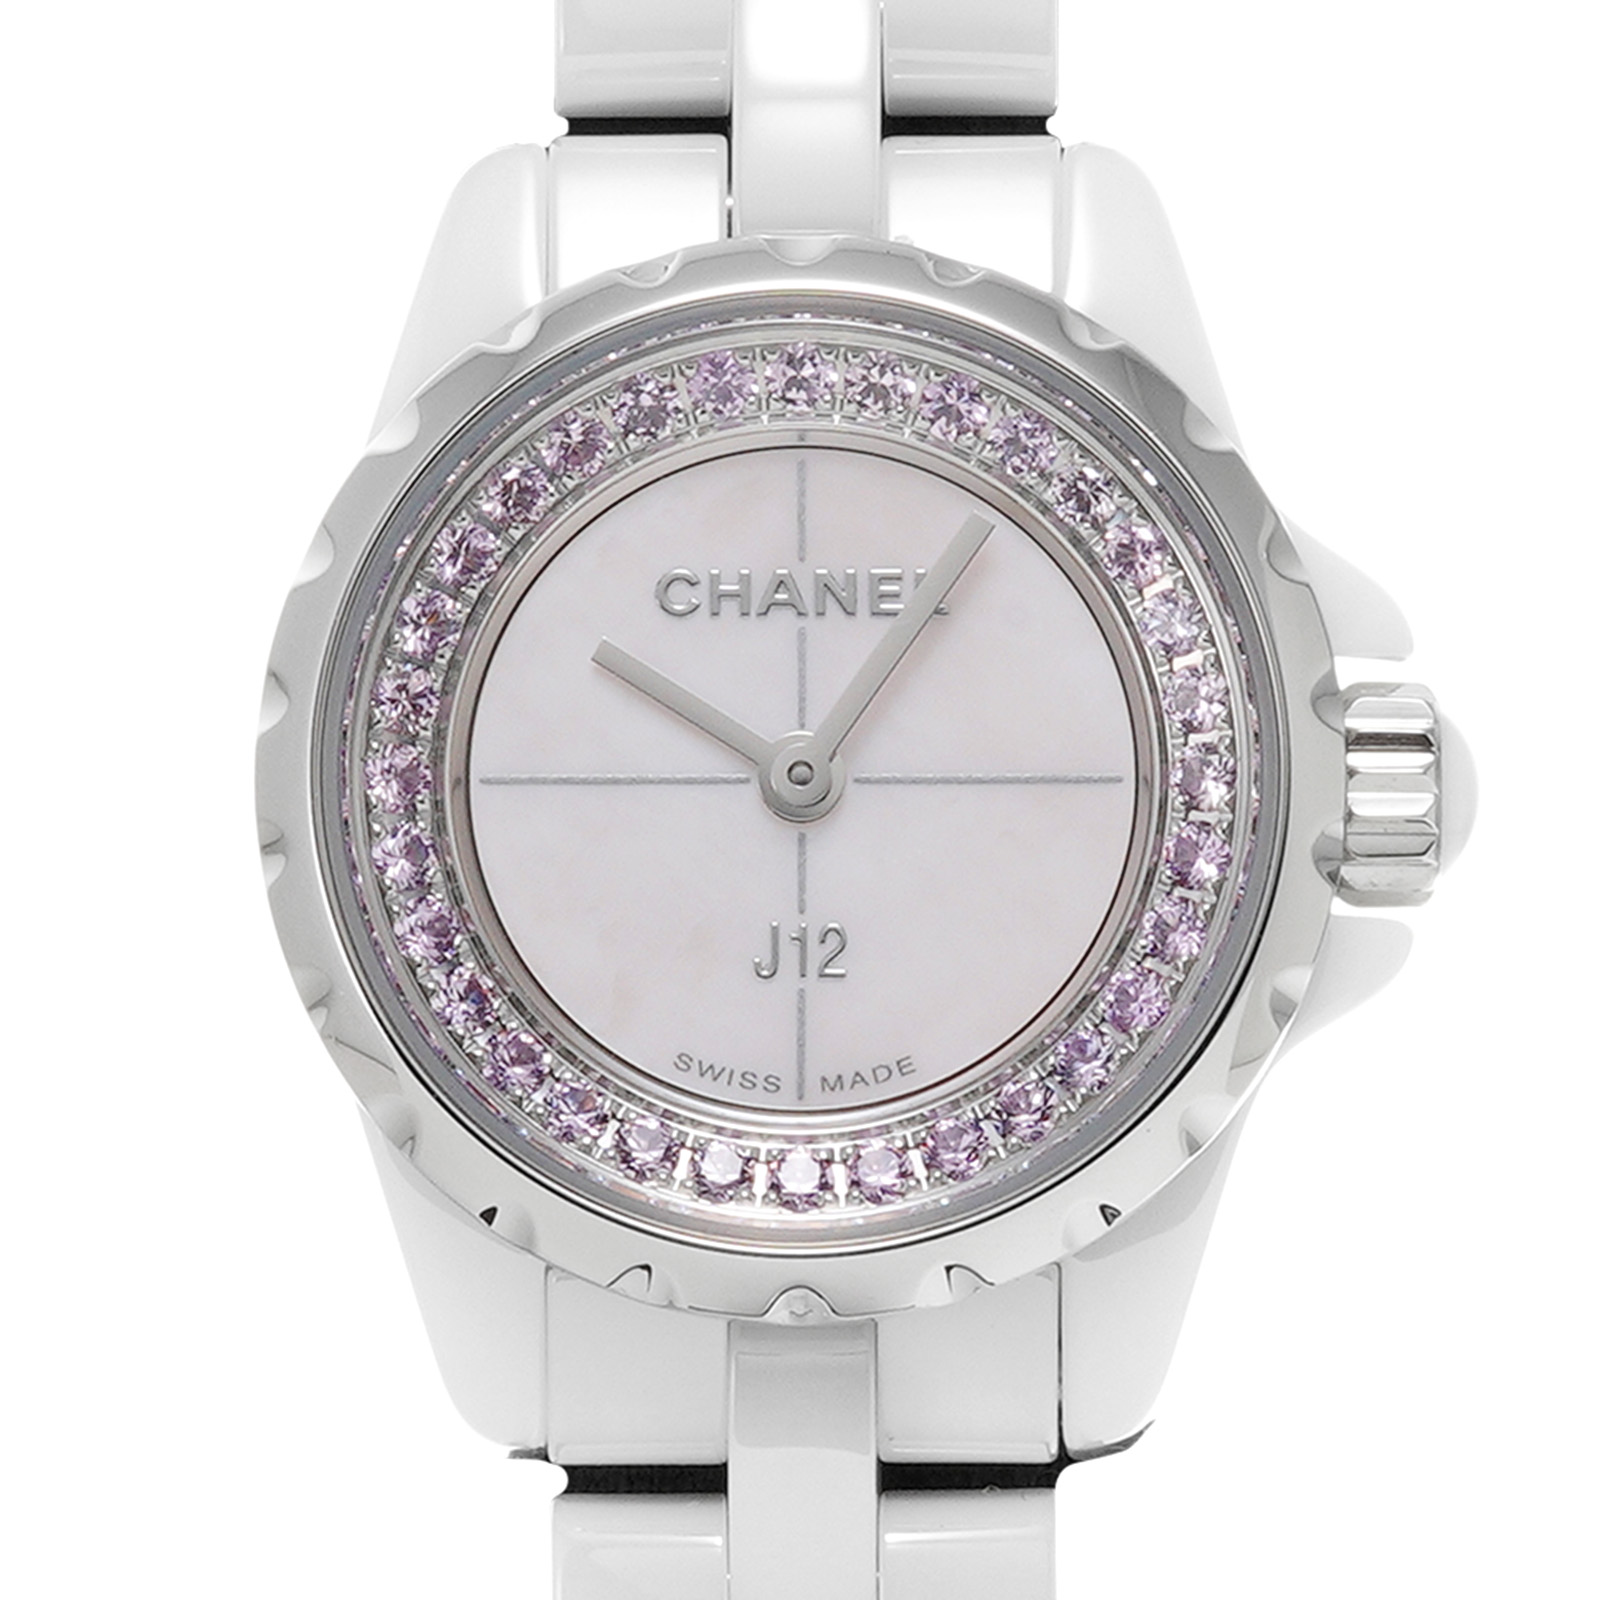 中古 シャネル CHANEL H5512 ピンクシェル /サファイア レディース 腕時計 腕時計 最安値特売